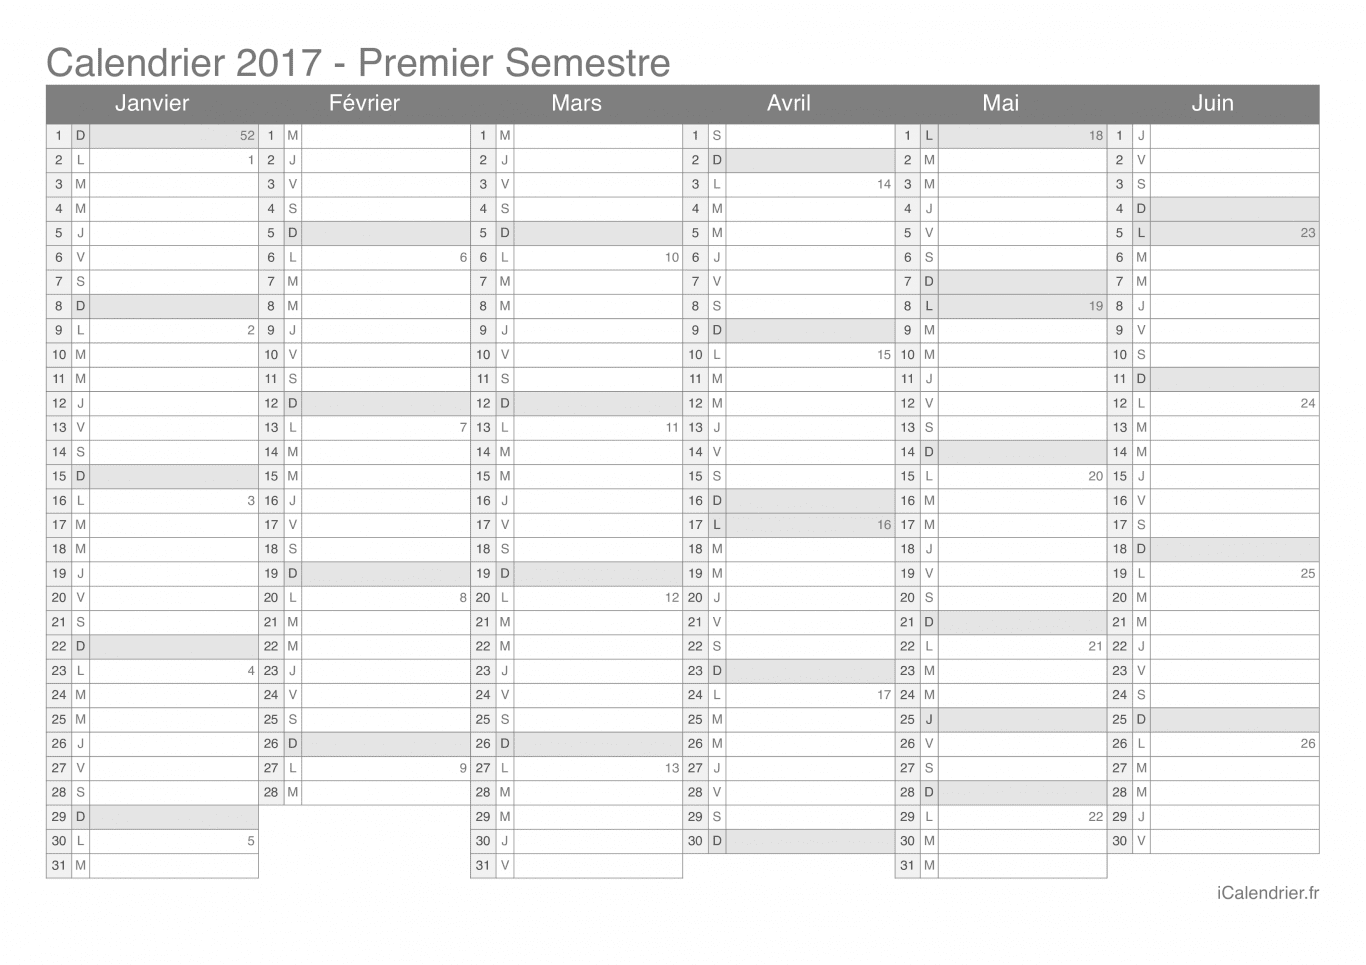 Calendrier par semestre avec numéros des semaines 2017